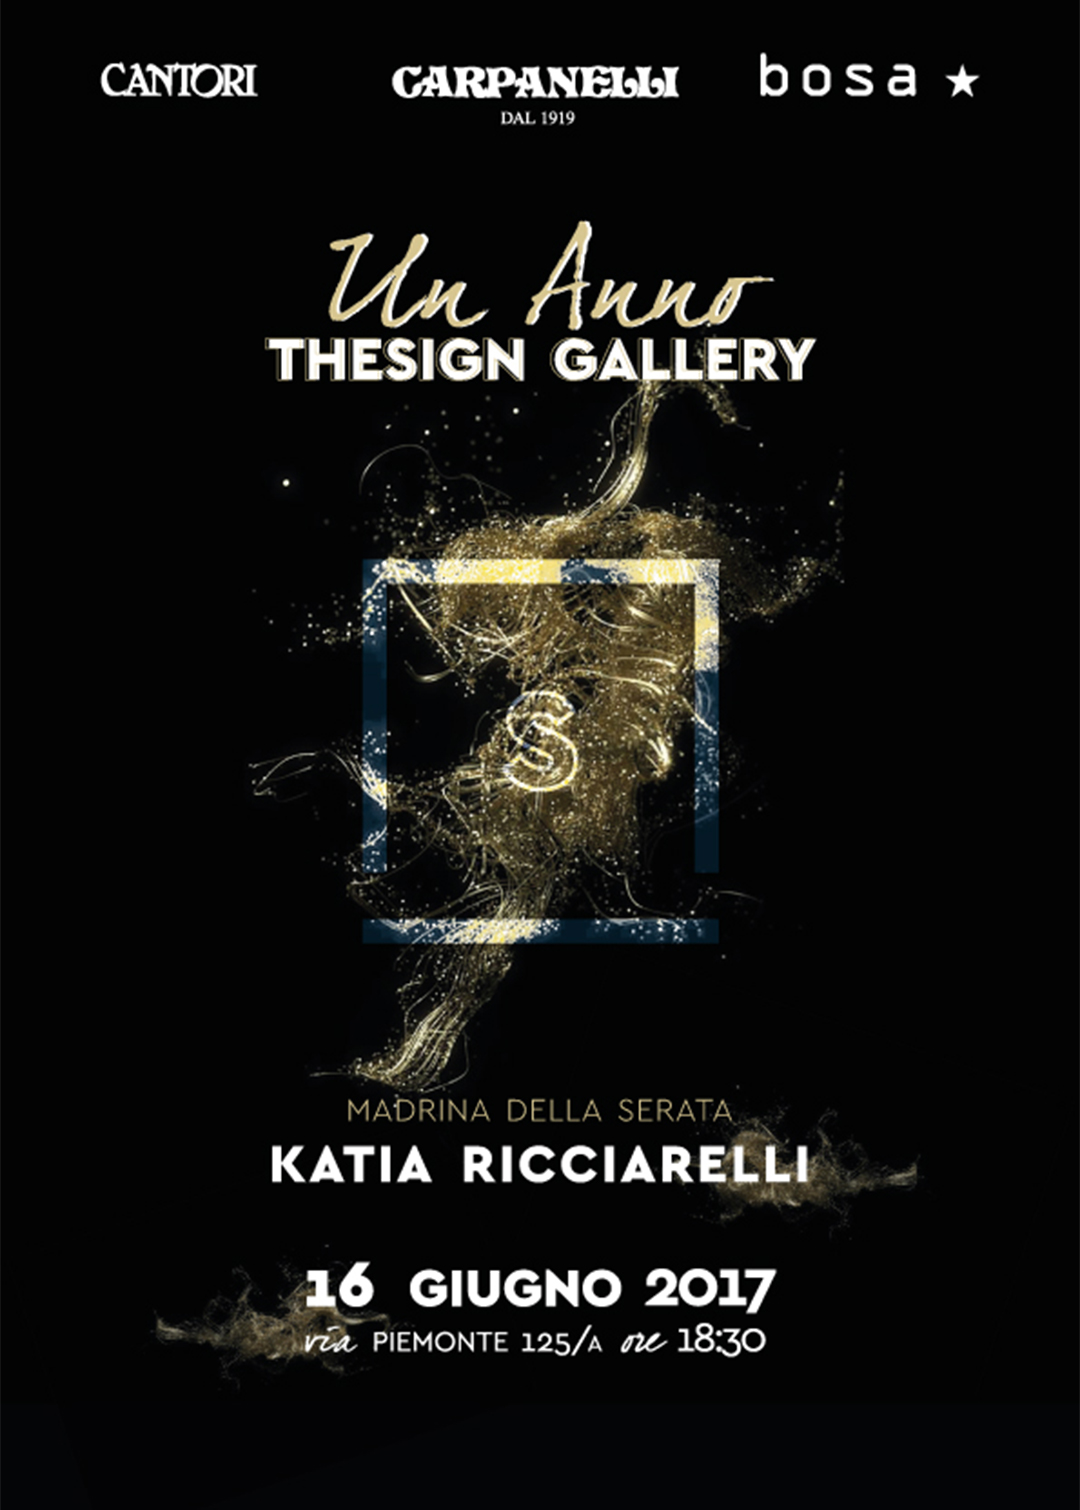 06/06/2017 Cantori all'evento "Un anno Thesign Gallery" - Cantori